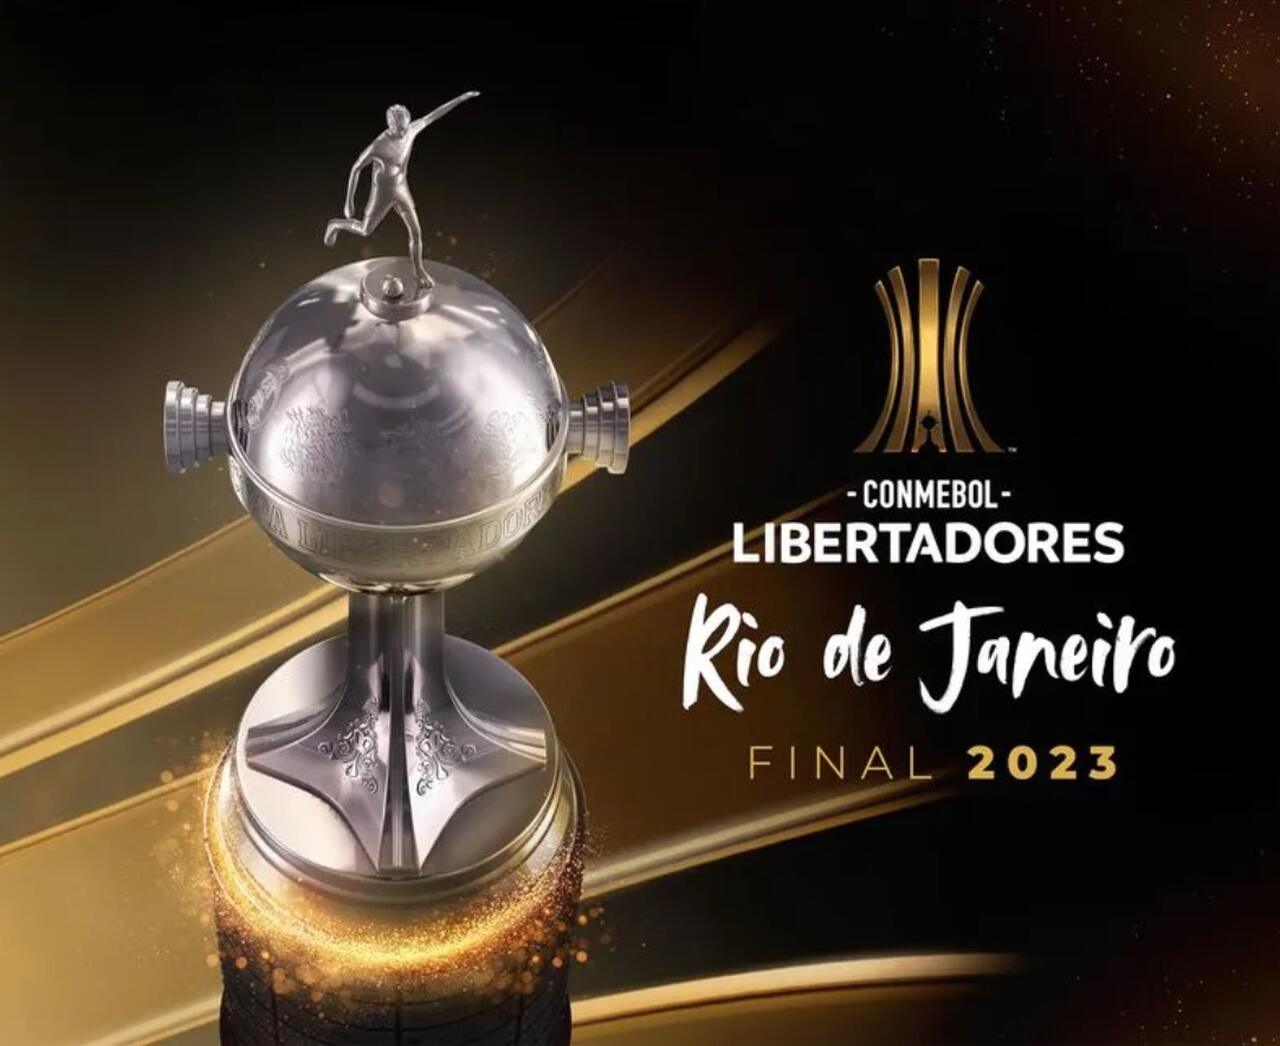 As finais da CONMEBOL eLibertadores 23 chegam a Buenos Aires em 25 e 26 de  fevereiro - Gamer Spoiler